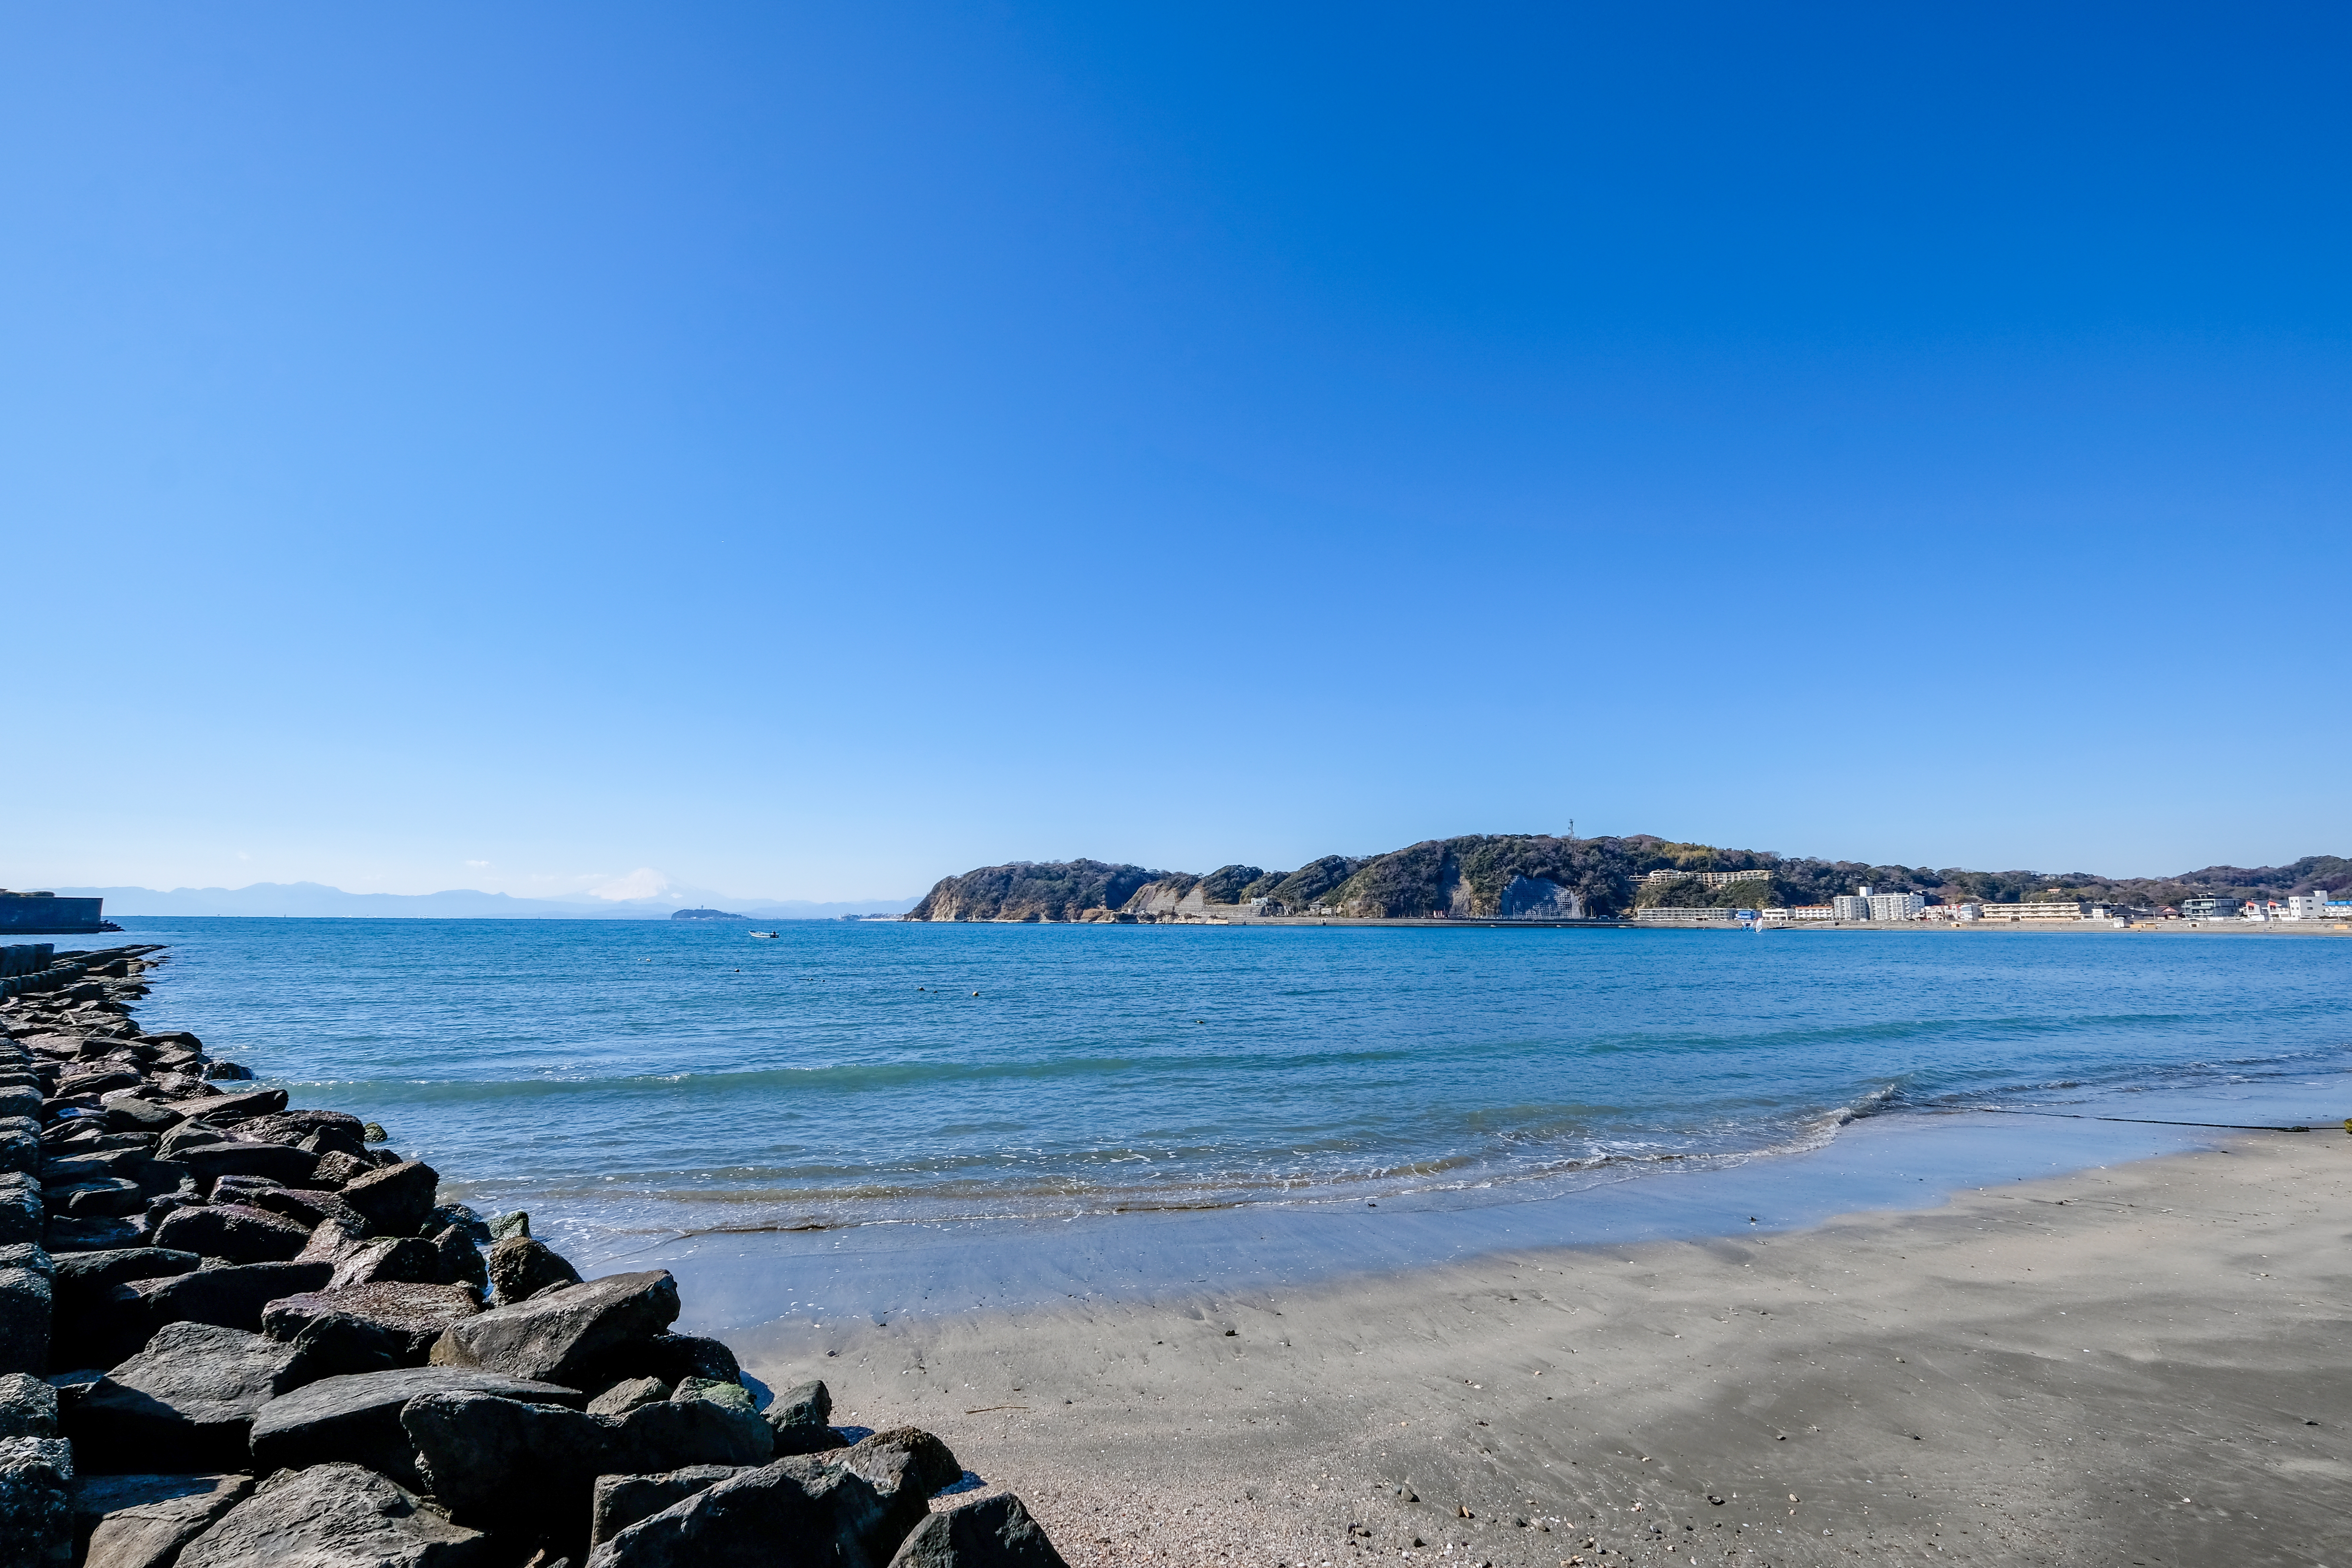 Une journée ensoleillée à la plage de Zushi (kazu8 / Shutterstock.com)